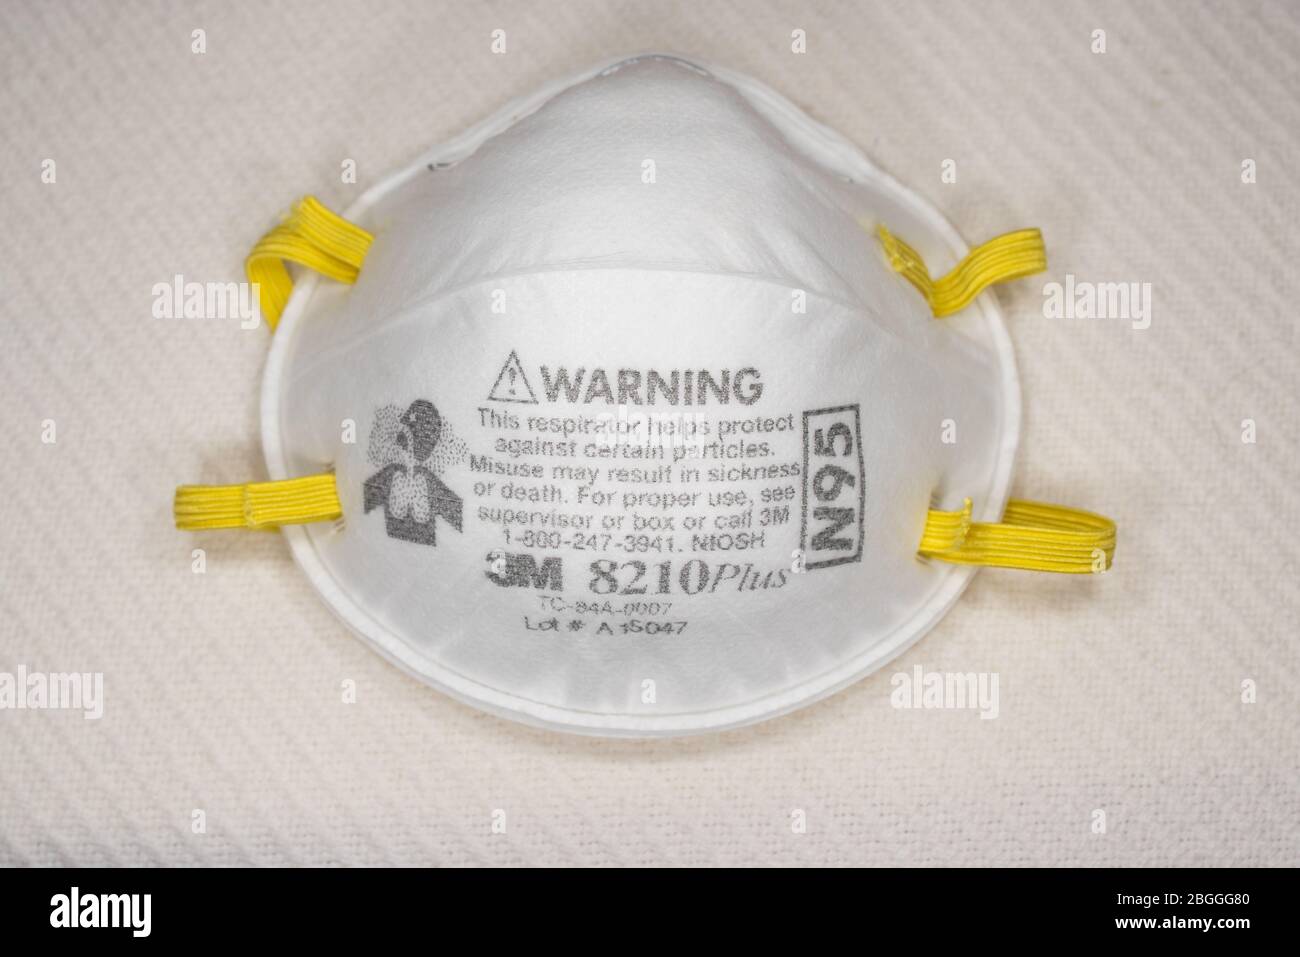 Eine 3M Atemschutzmaske Typ N95 zum Schutz vor Verschmutzung und Krankheiten, wie Grippe und Viren, Coronavirus, isoliert auf einer weißen Krankenhausdecke. Stockfoto